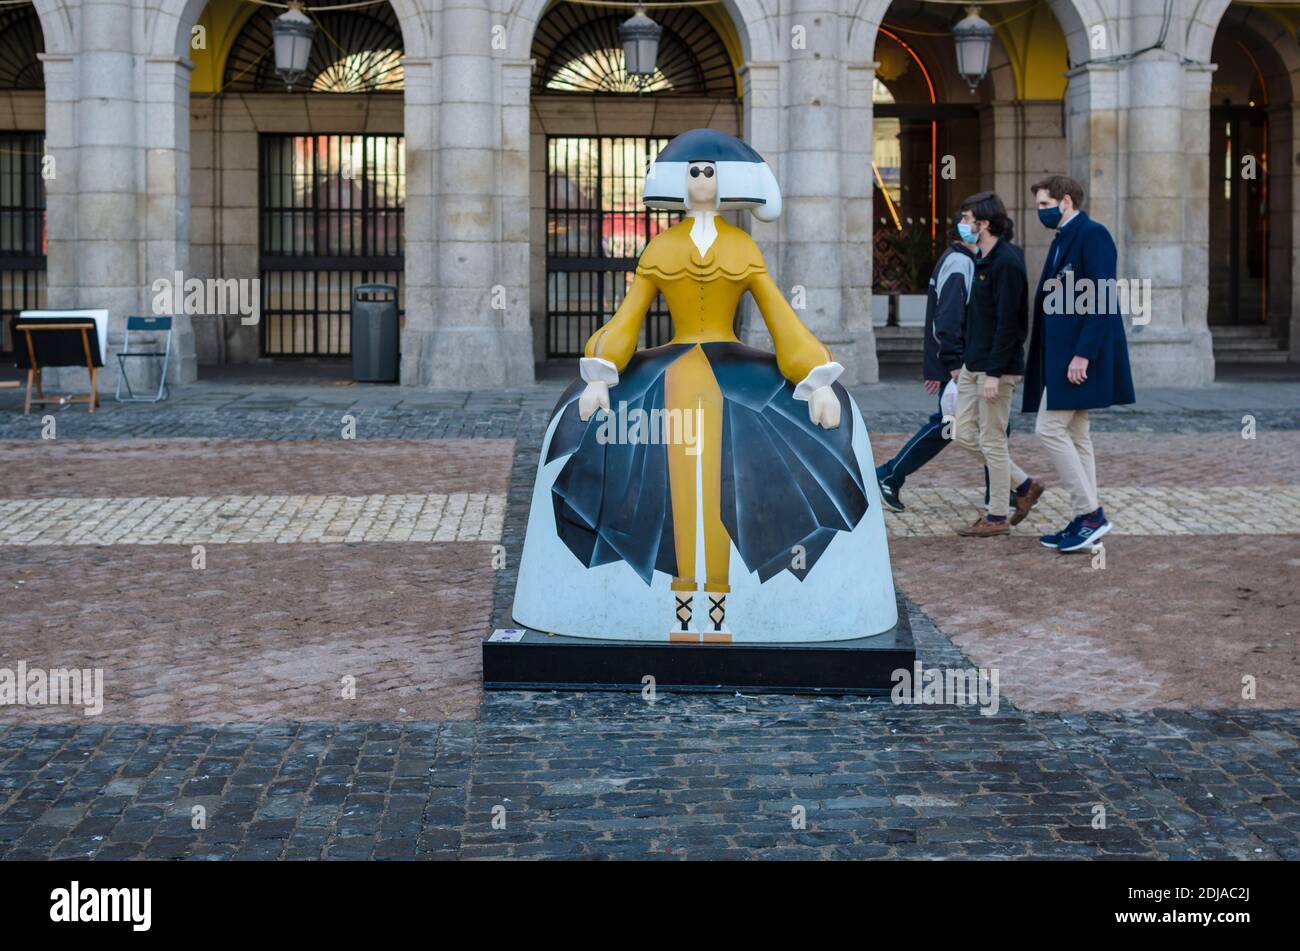 13 dicembre 2020. Una scultura Menina in piazza Mayor. Madrid città, Spagna. Foto Stock